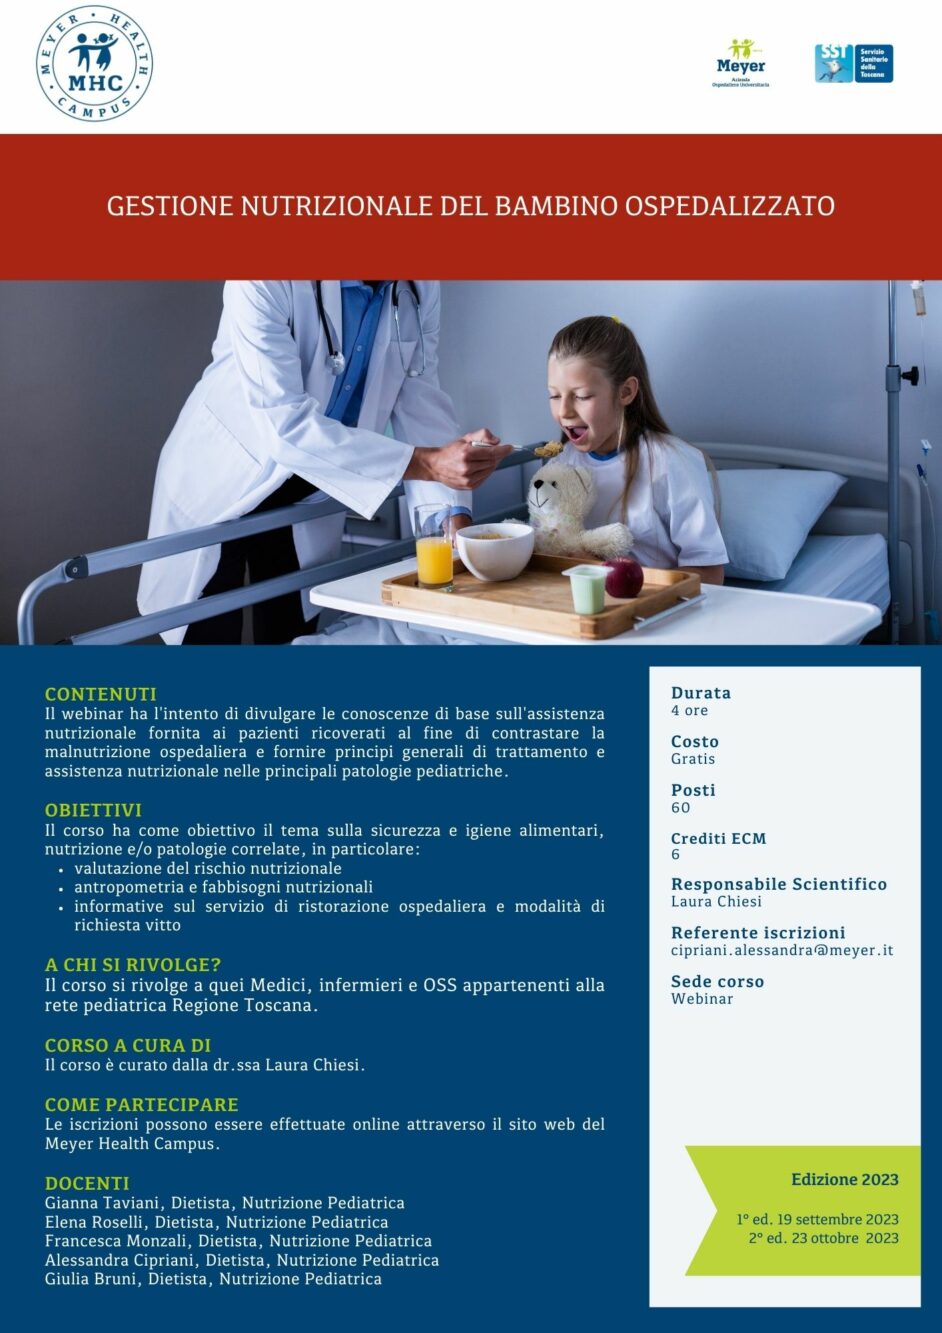 Gestione nutrizionale del bambino ospedalizzato (19 settembre 2023)